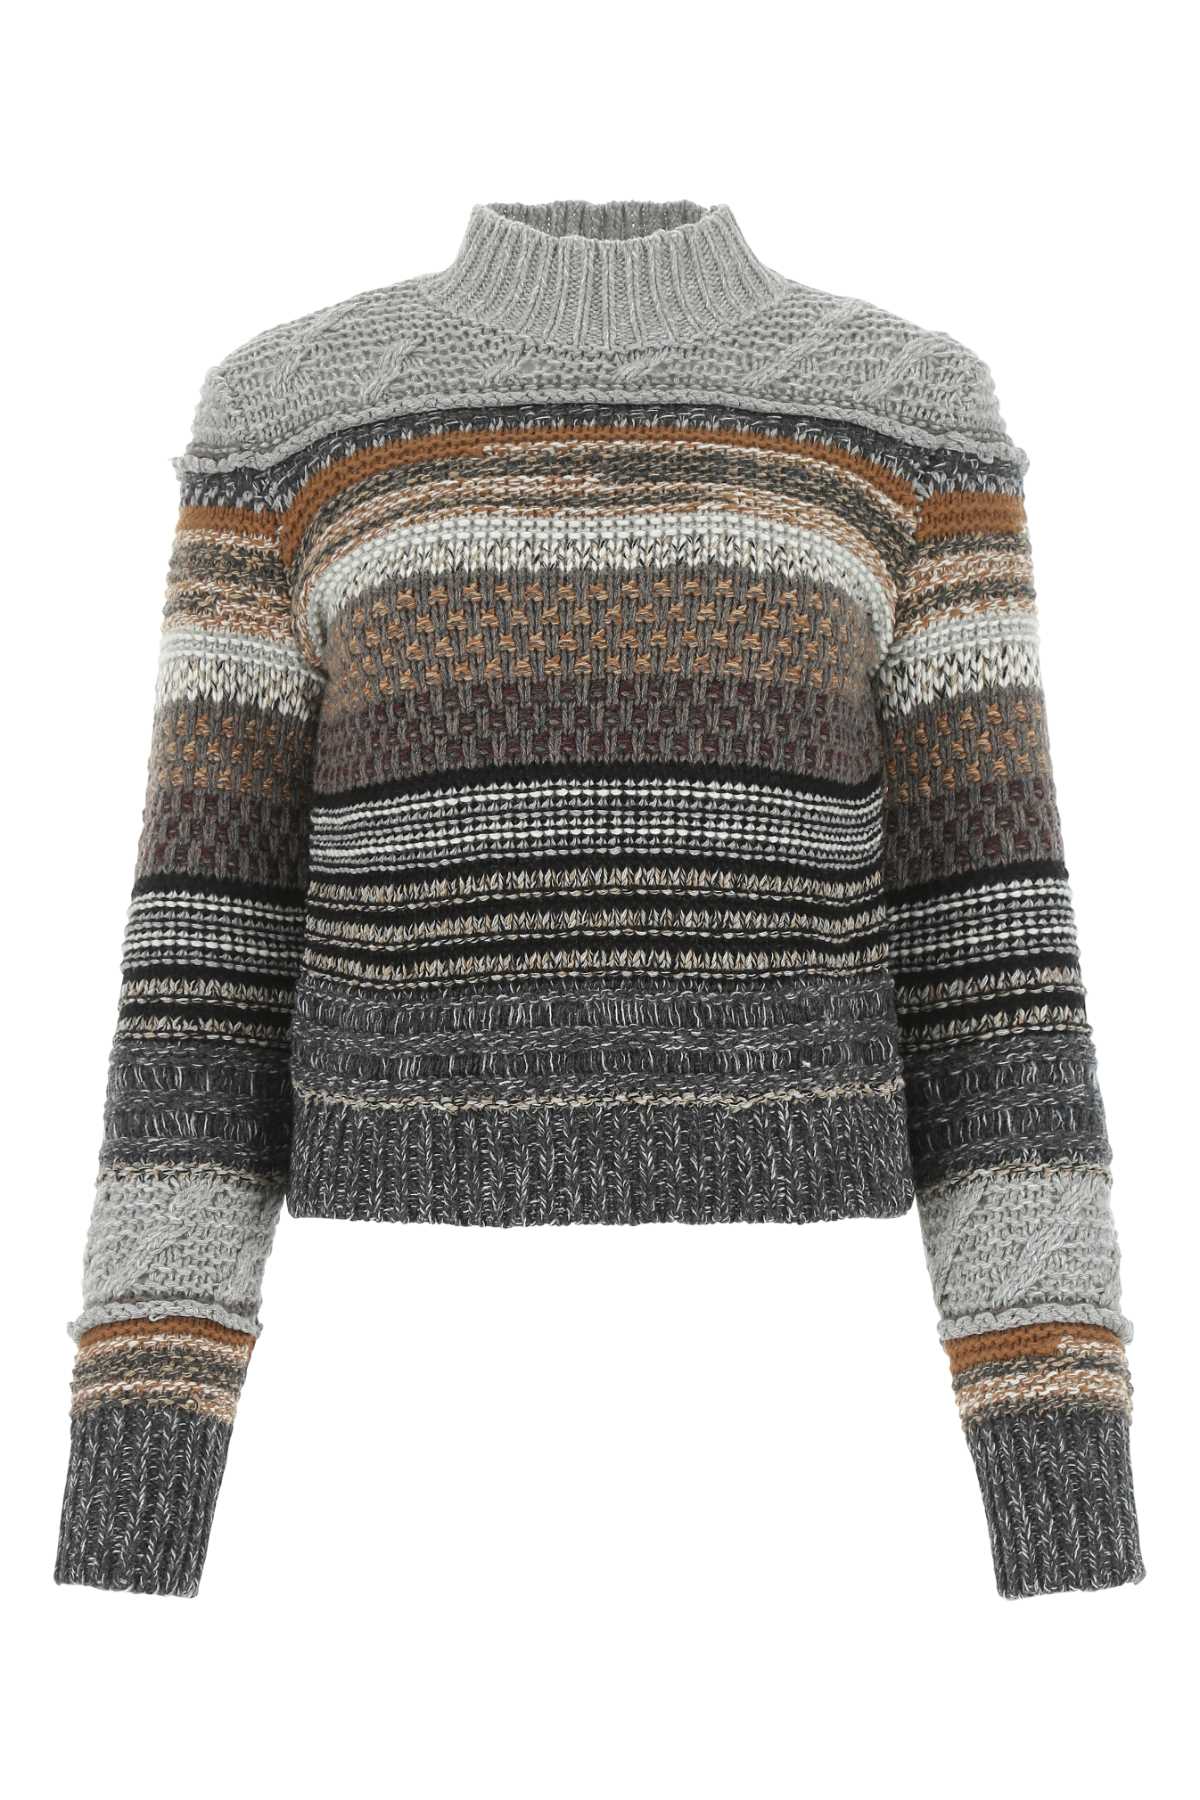 Chloé Multicolor Cashmere Blend Sweater